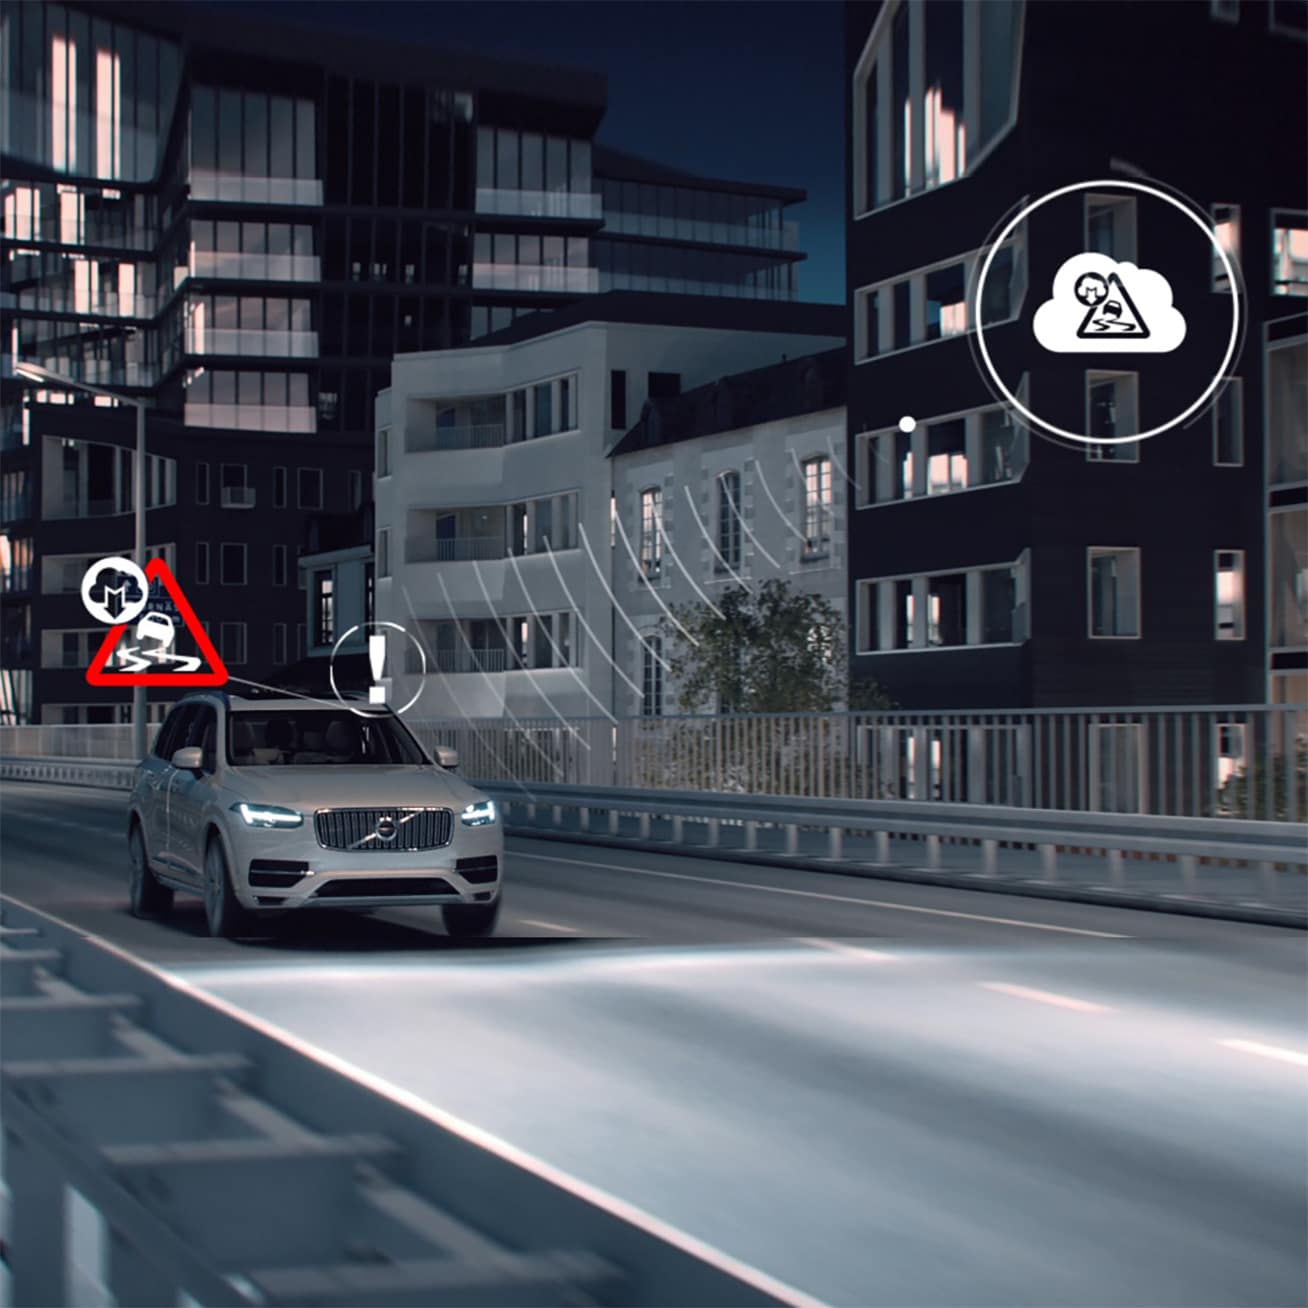 Volvo XC90 едет по застроенному району ночью, фото с наложением цифровой визуализации значков.